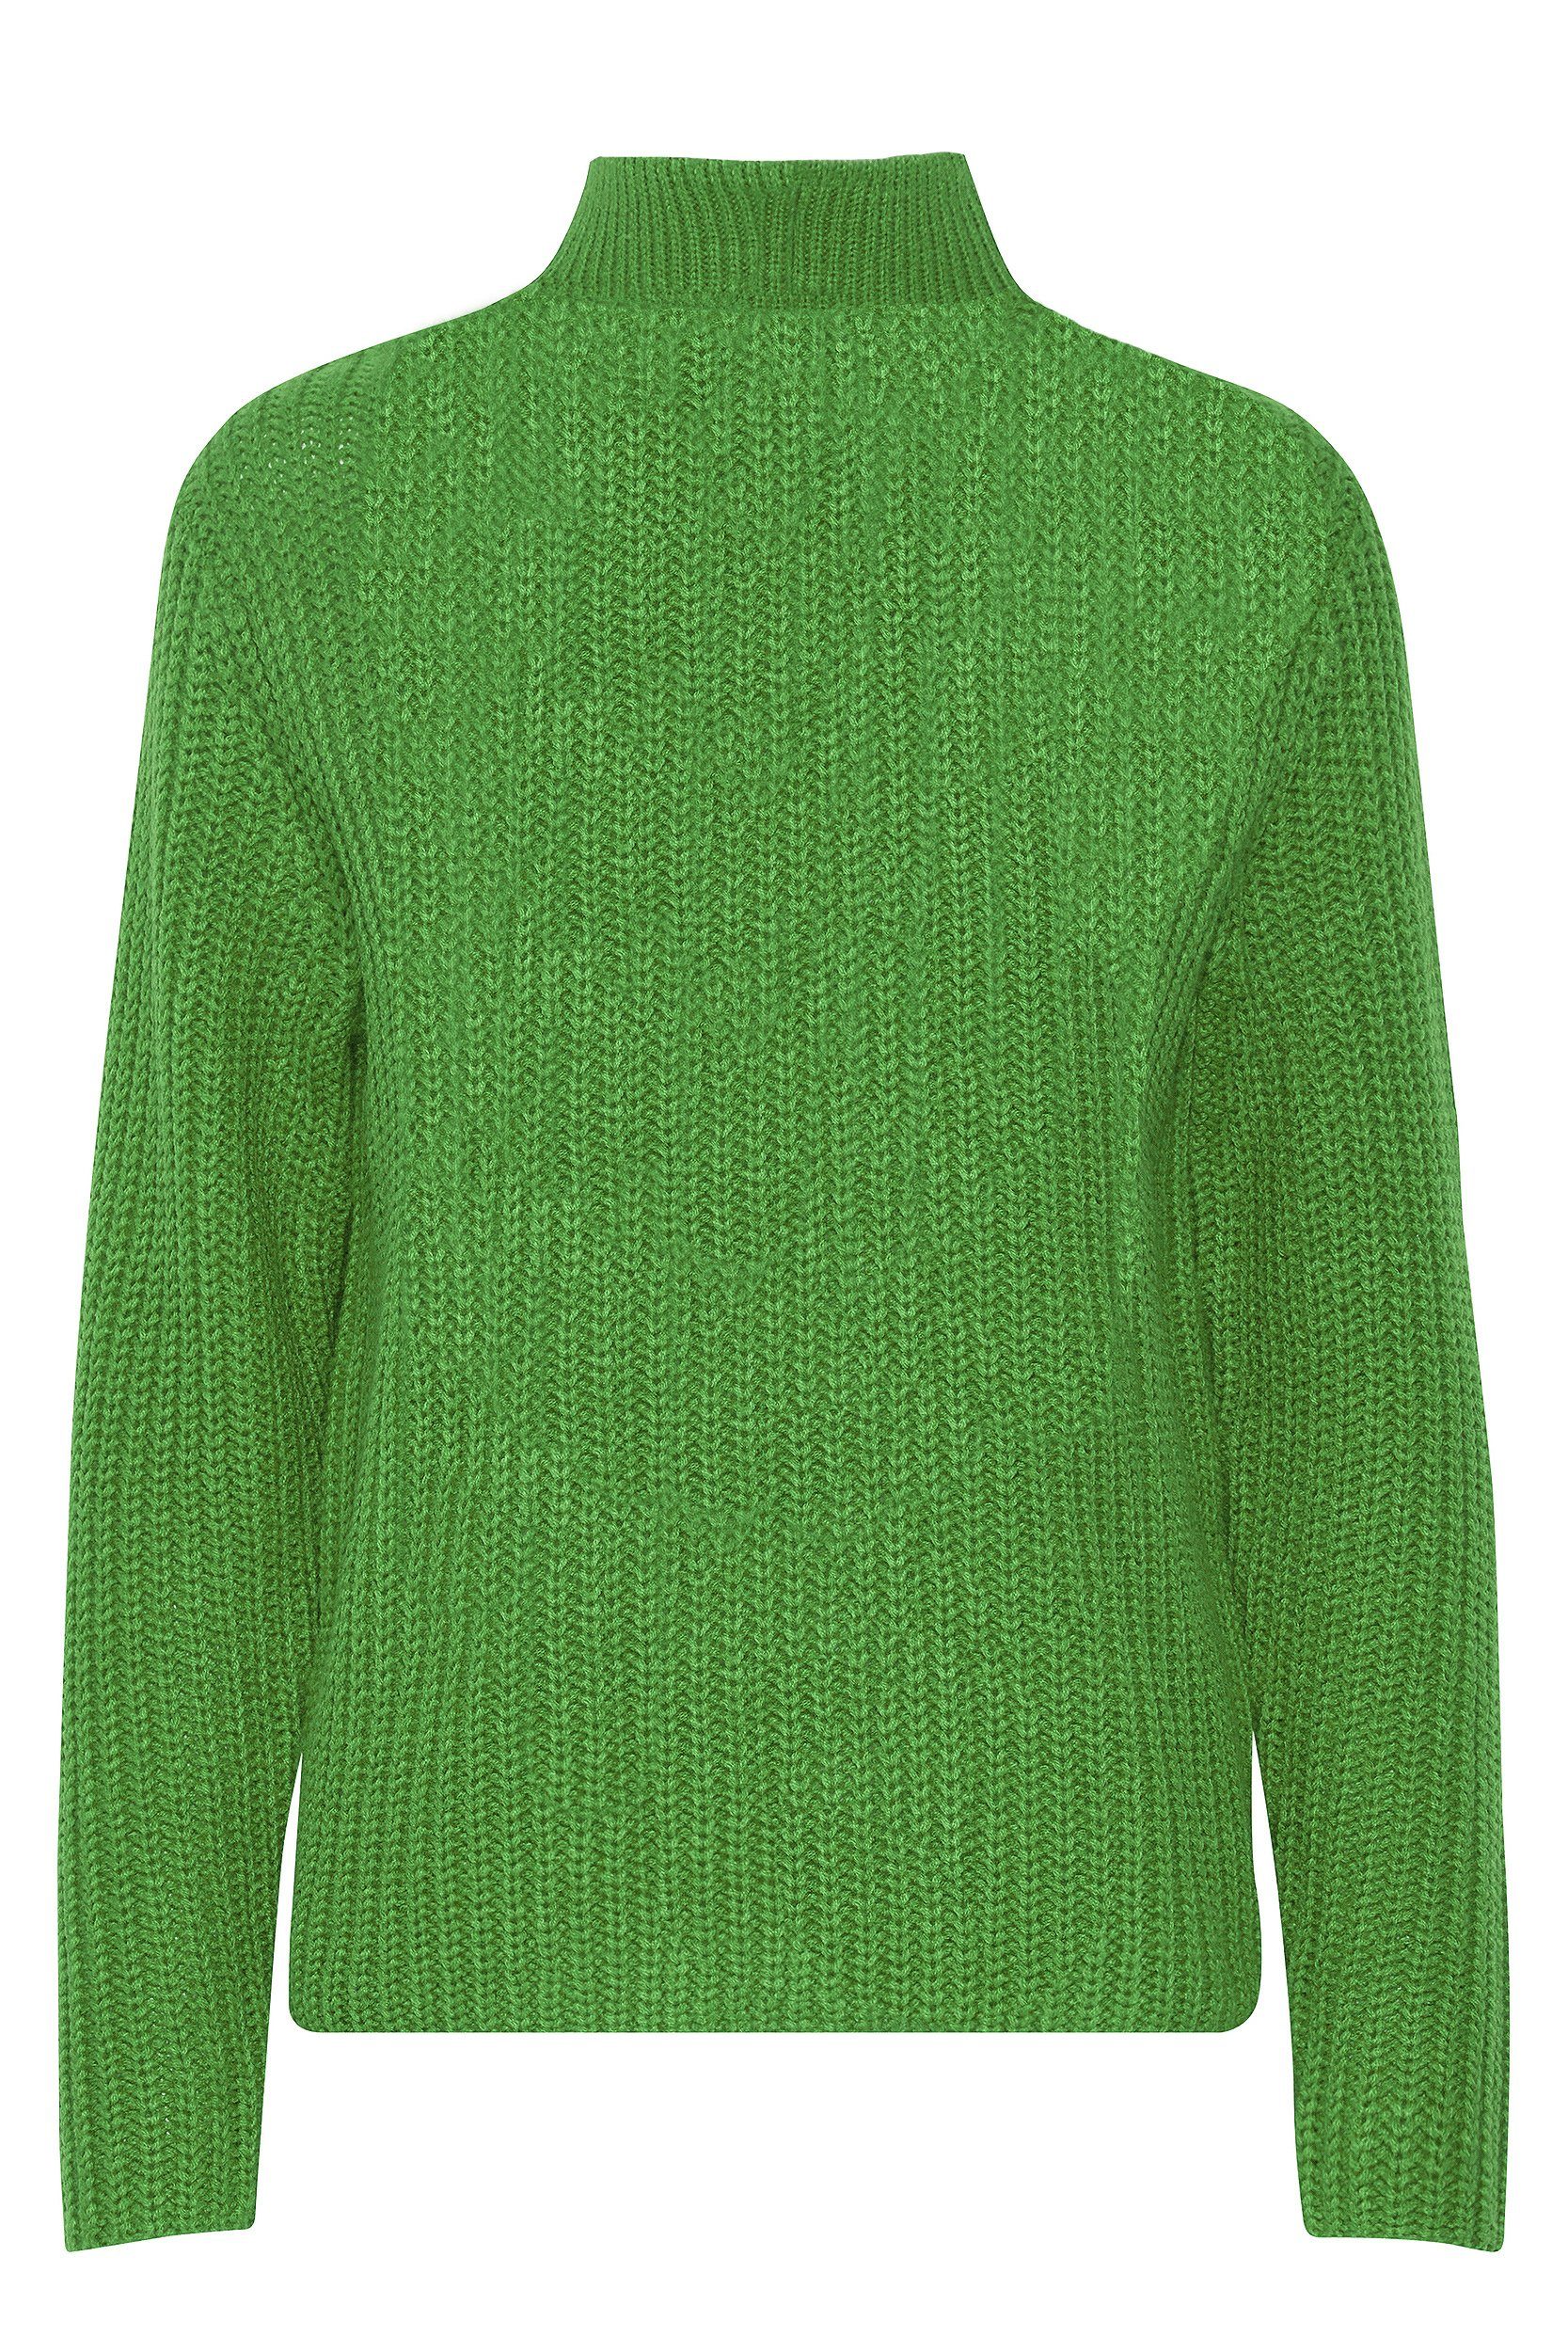 Grobstrick Pullover Sweater Reißverschluss 6677 Grün in Strickpullover b.young mit Troyer Kragen